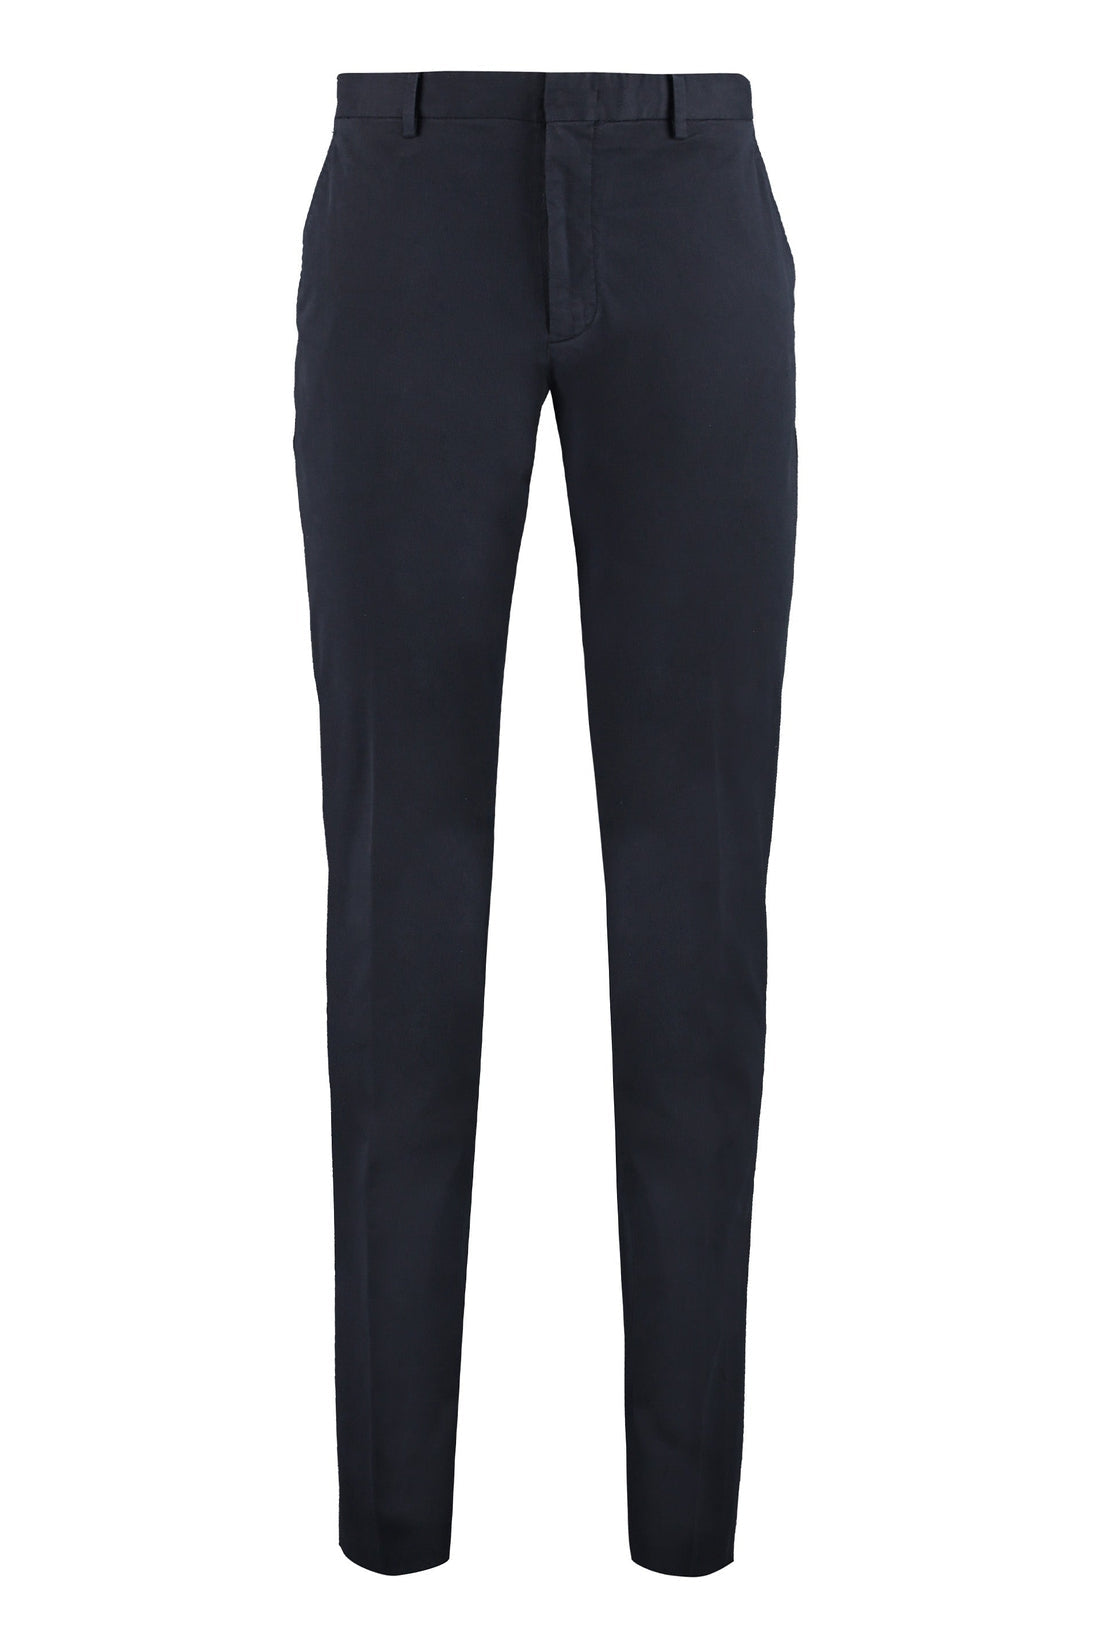 Zegna-OUTLET-SALE-Cotton trousers-ARCHIVIST